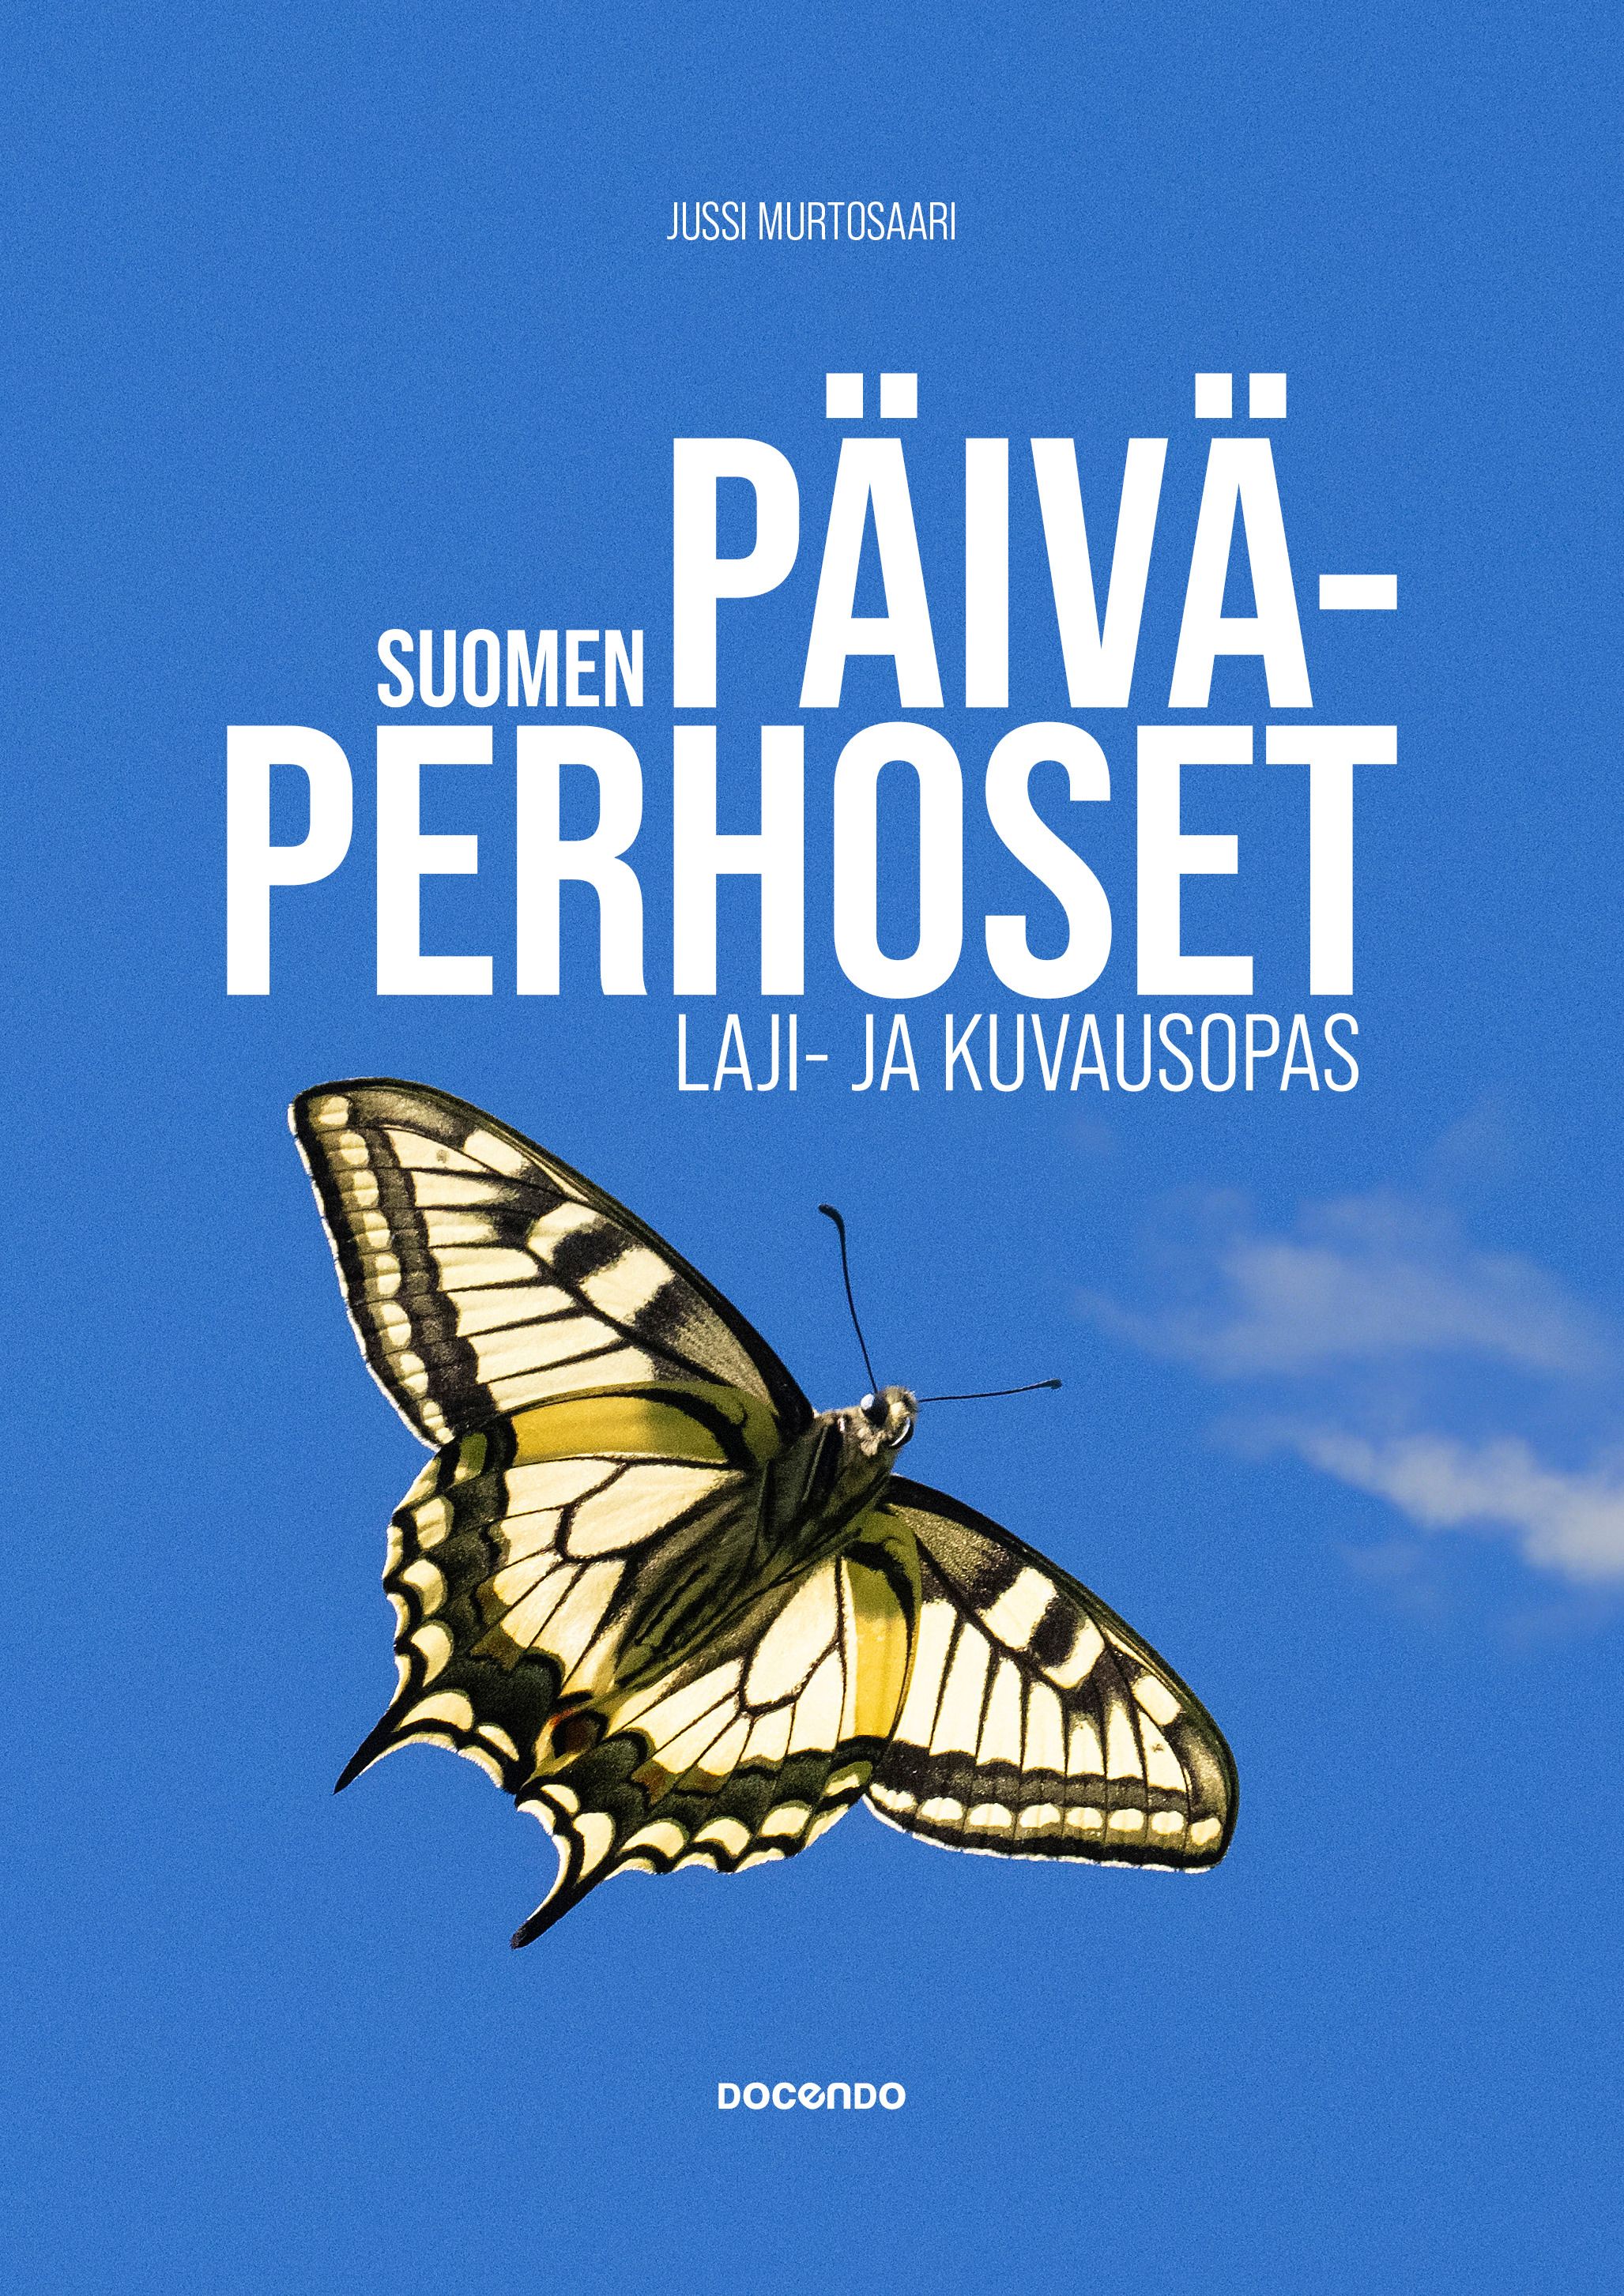 Jussi Murtosaari : Suomen päiväperhoset